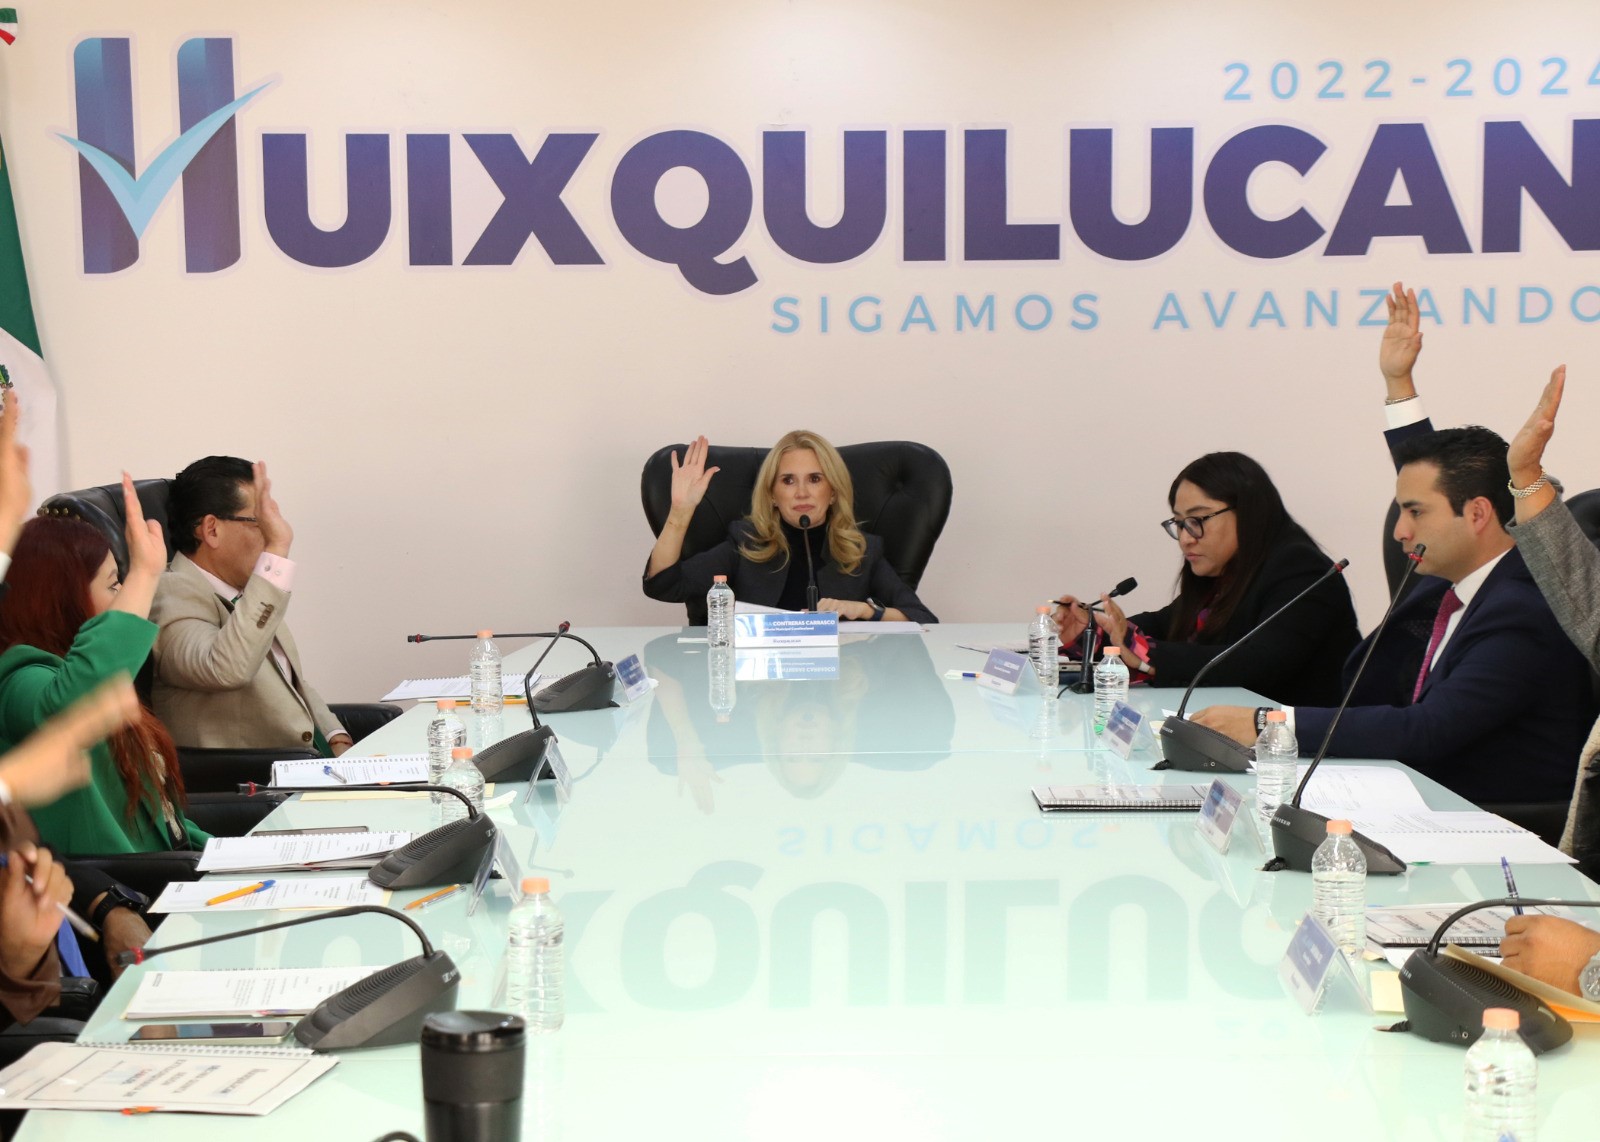 Cabildo de Huixquilucan aprueba presupuesto